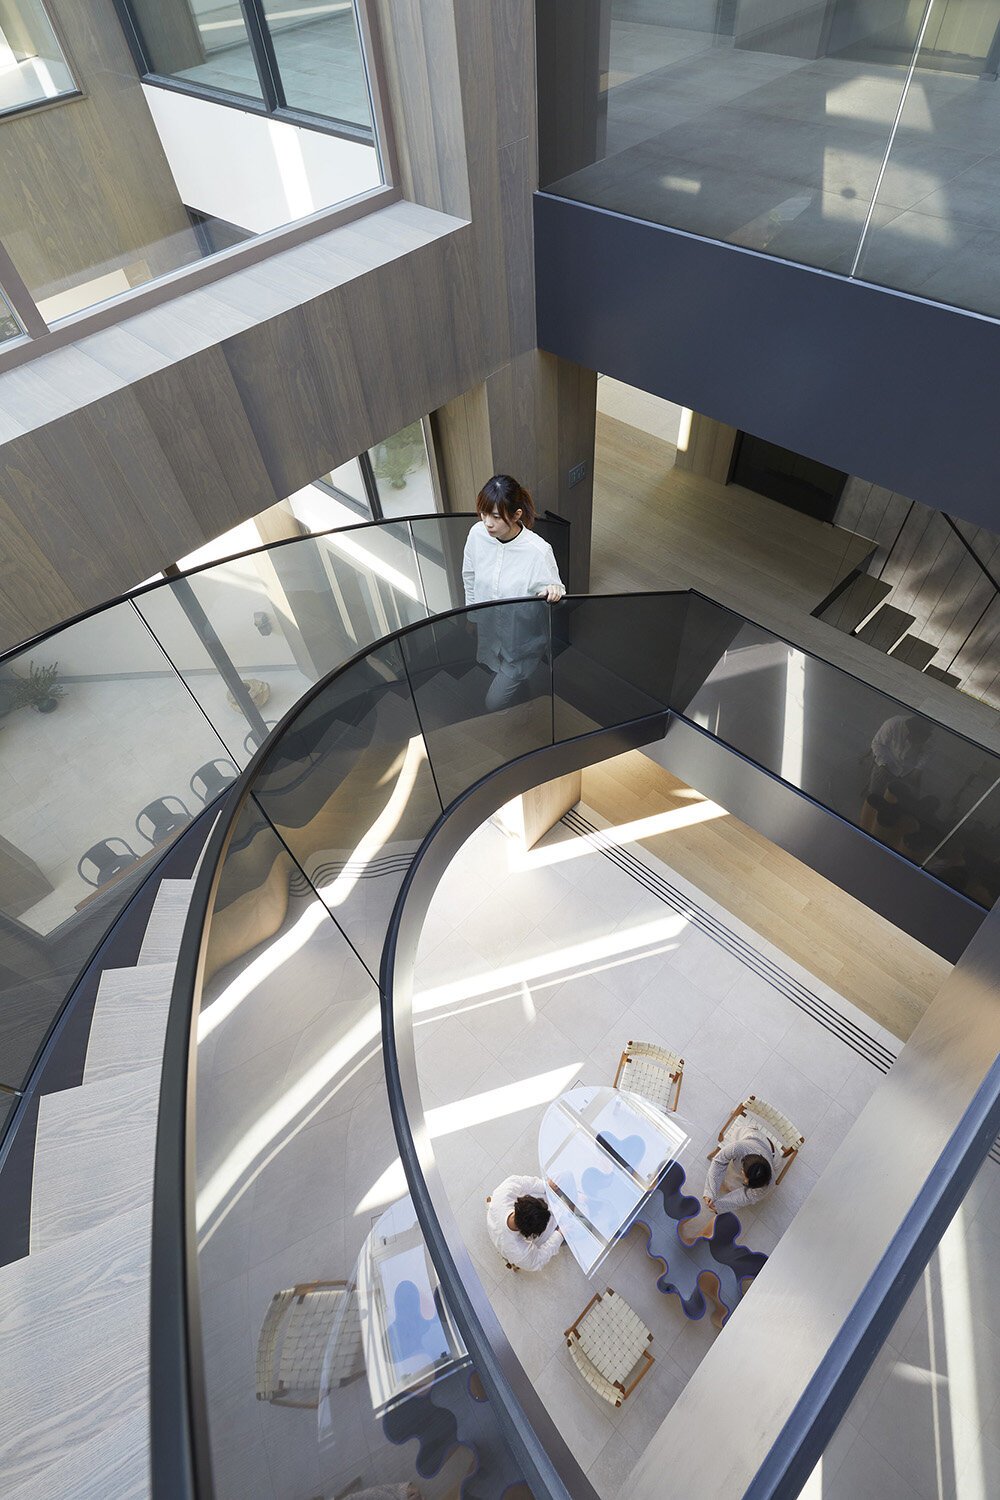  建築家 sinatoシナトの大野力が設計した住宅Shoto S。吹き抜けの階段を見下ろす 